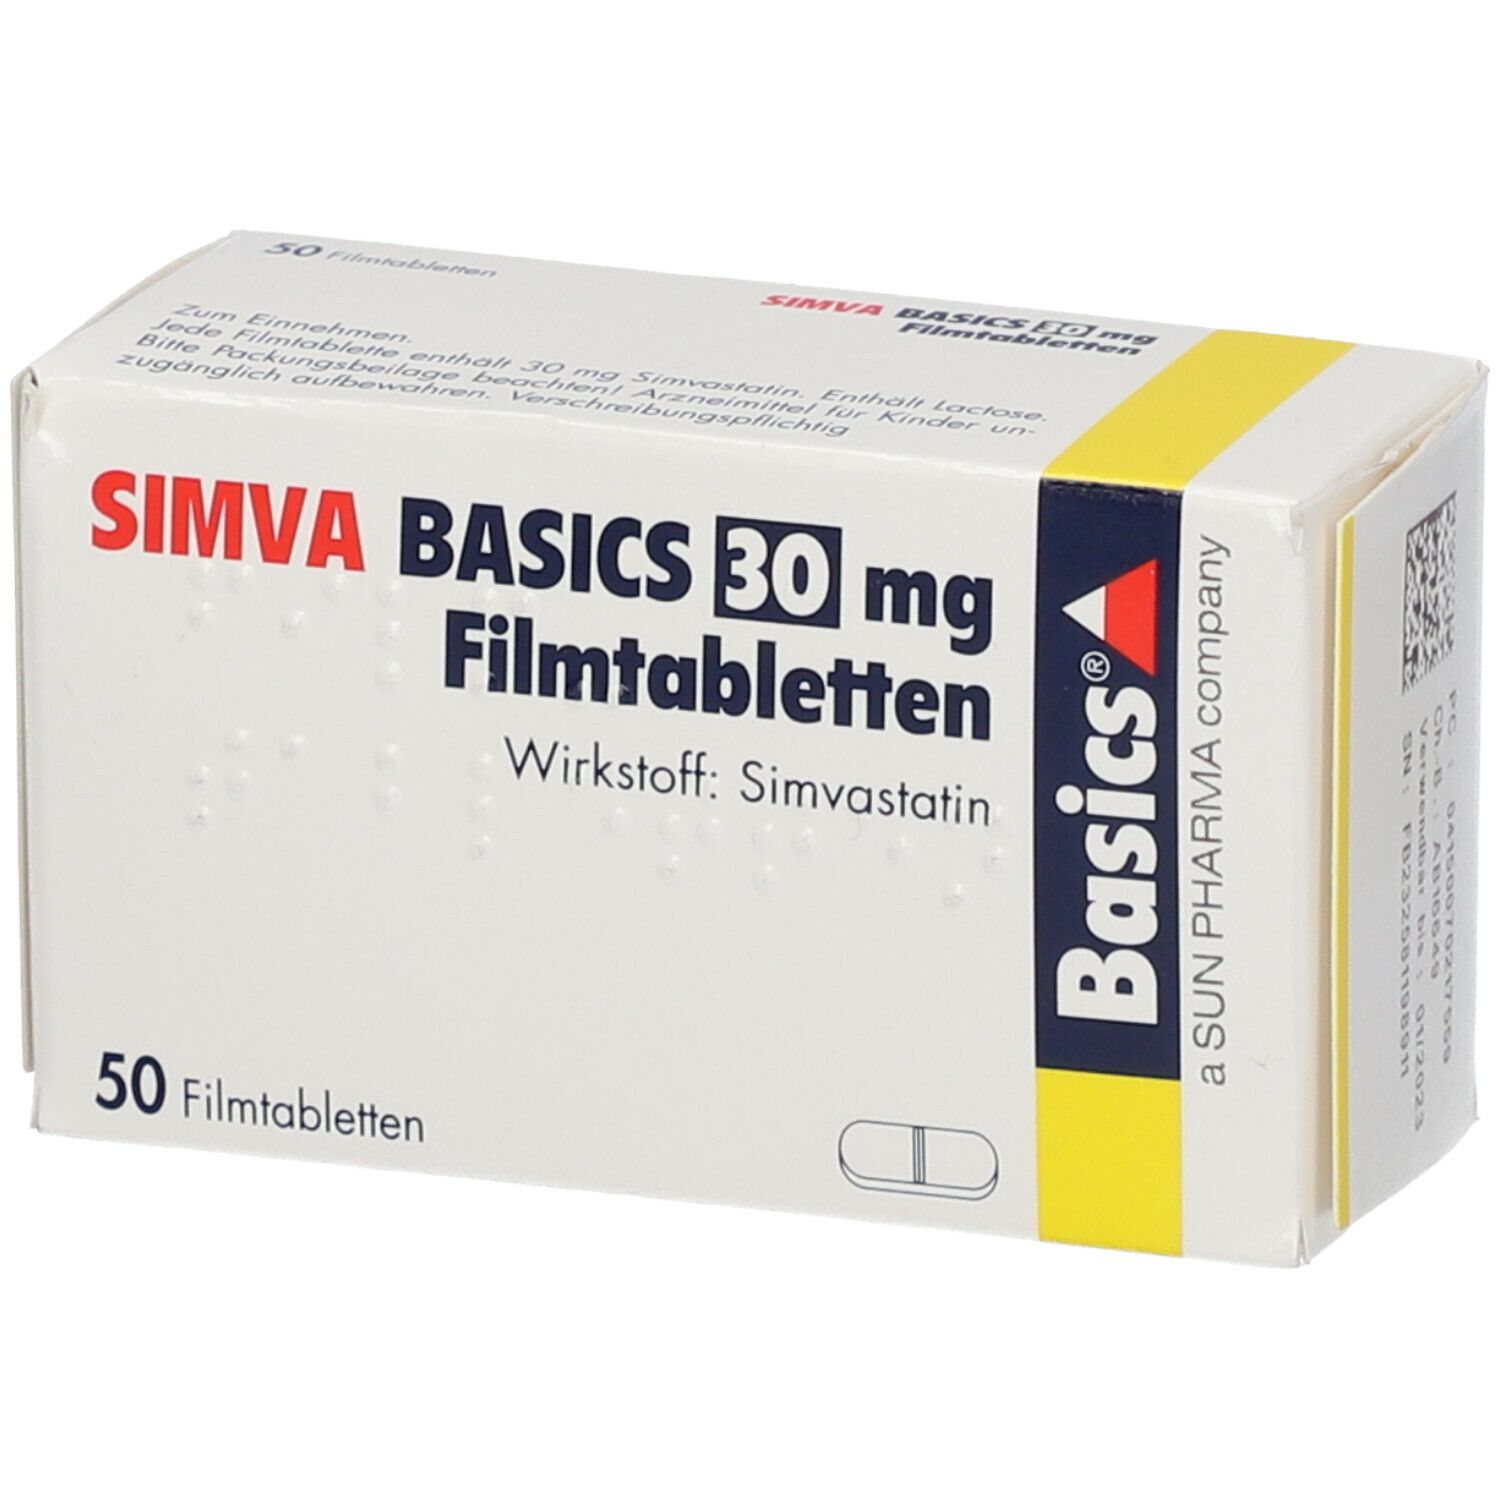 SIMVA BASICS 30 mg